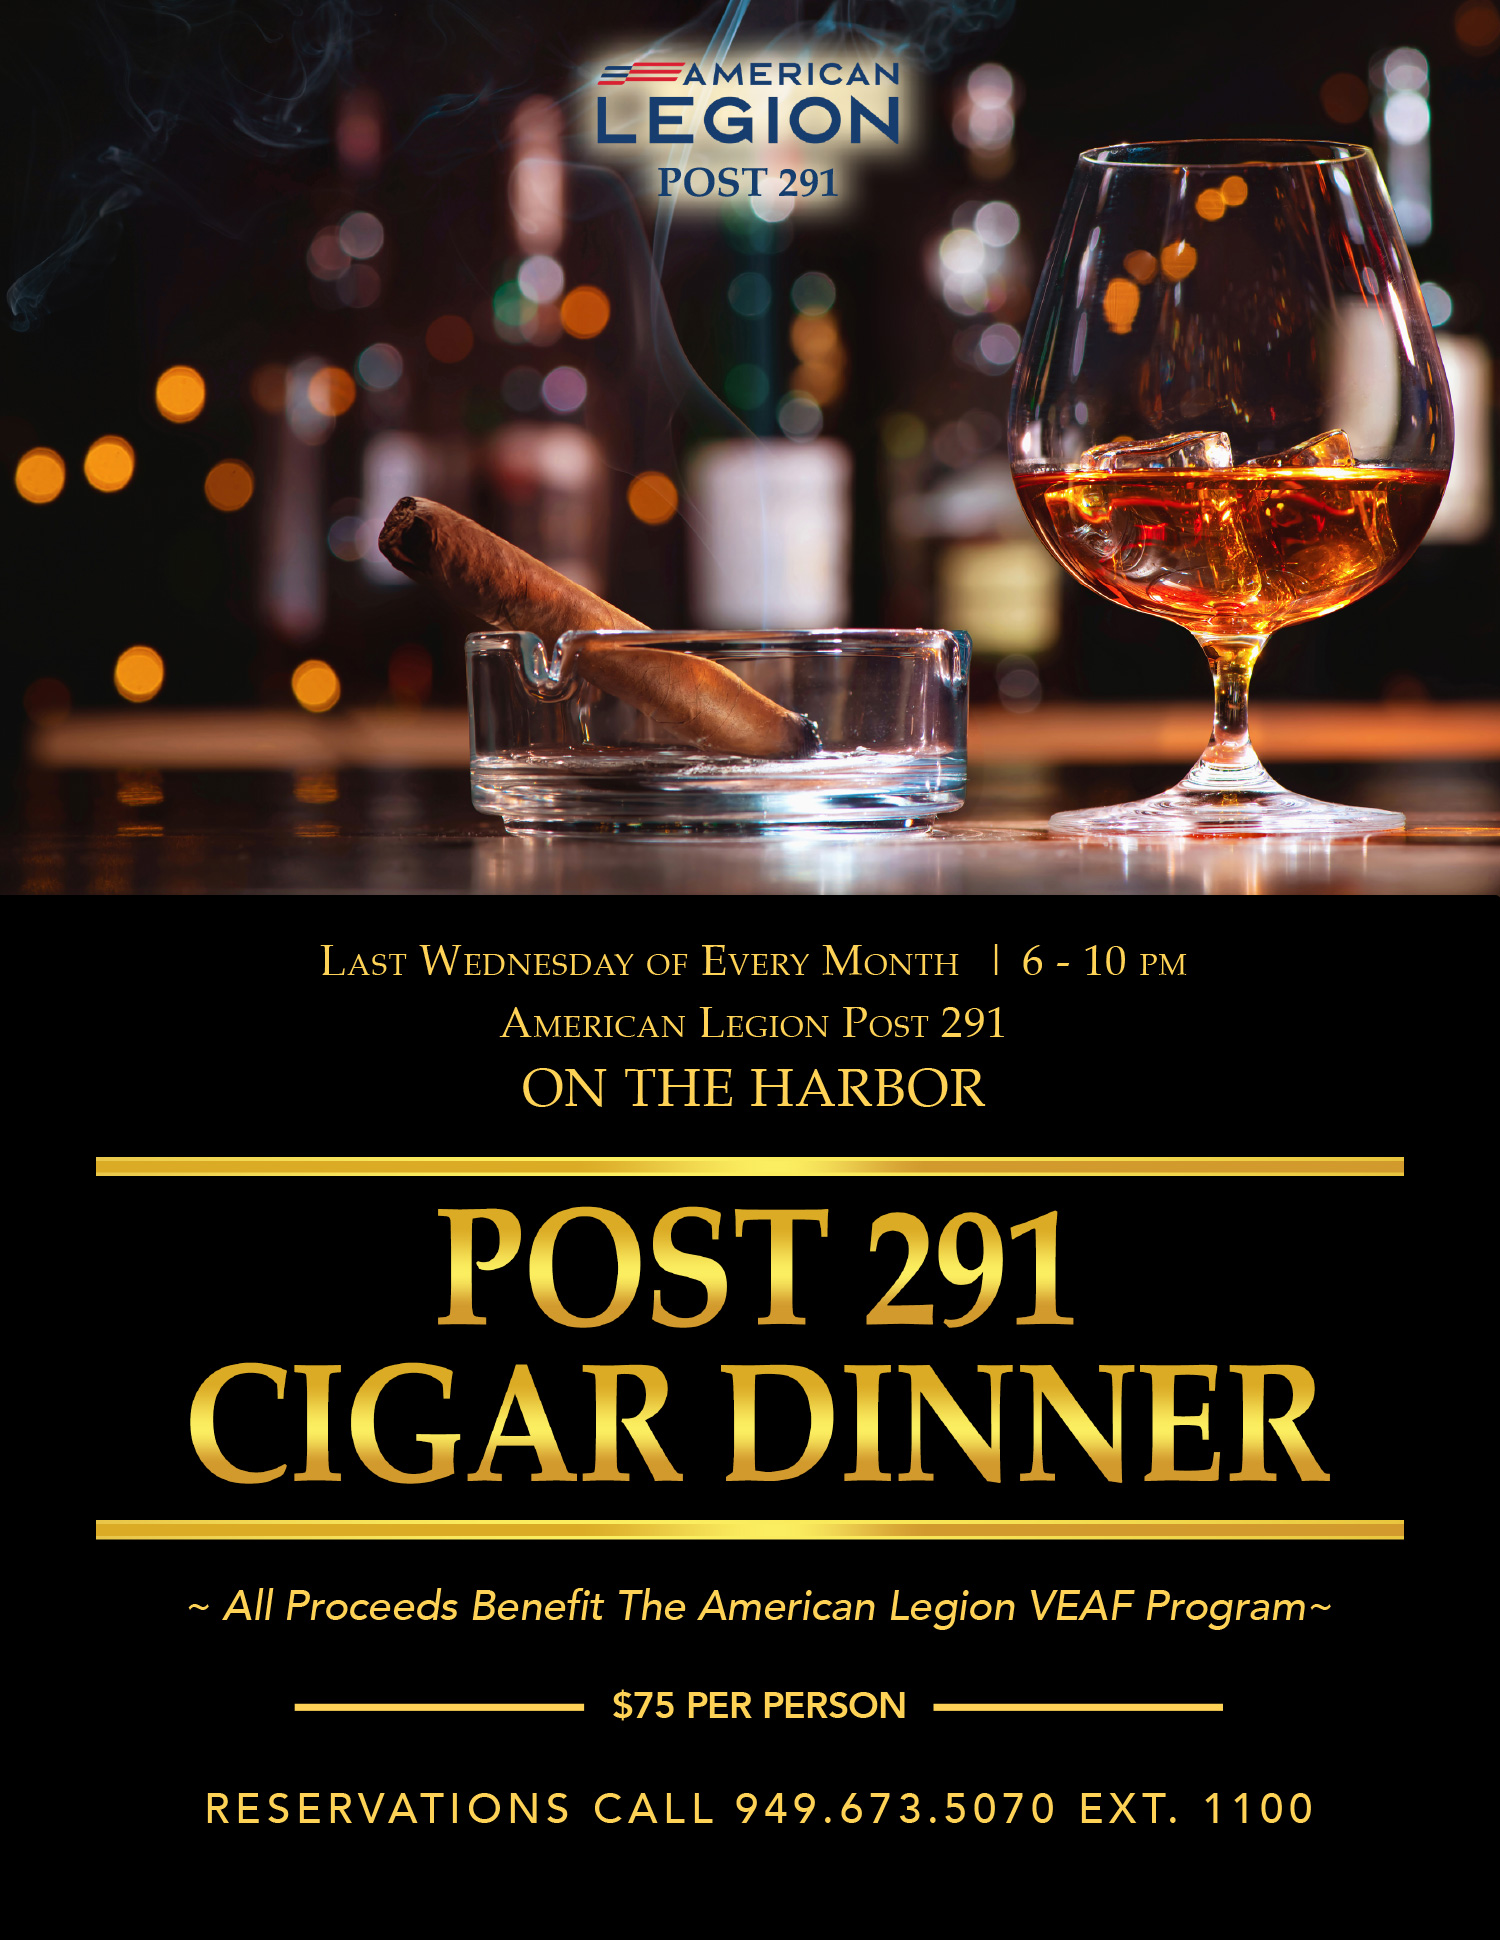 Monthly Cigar Dinner for the VEAF